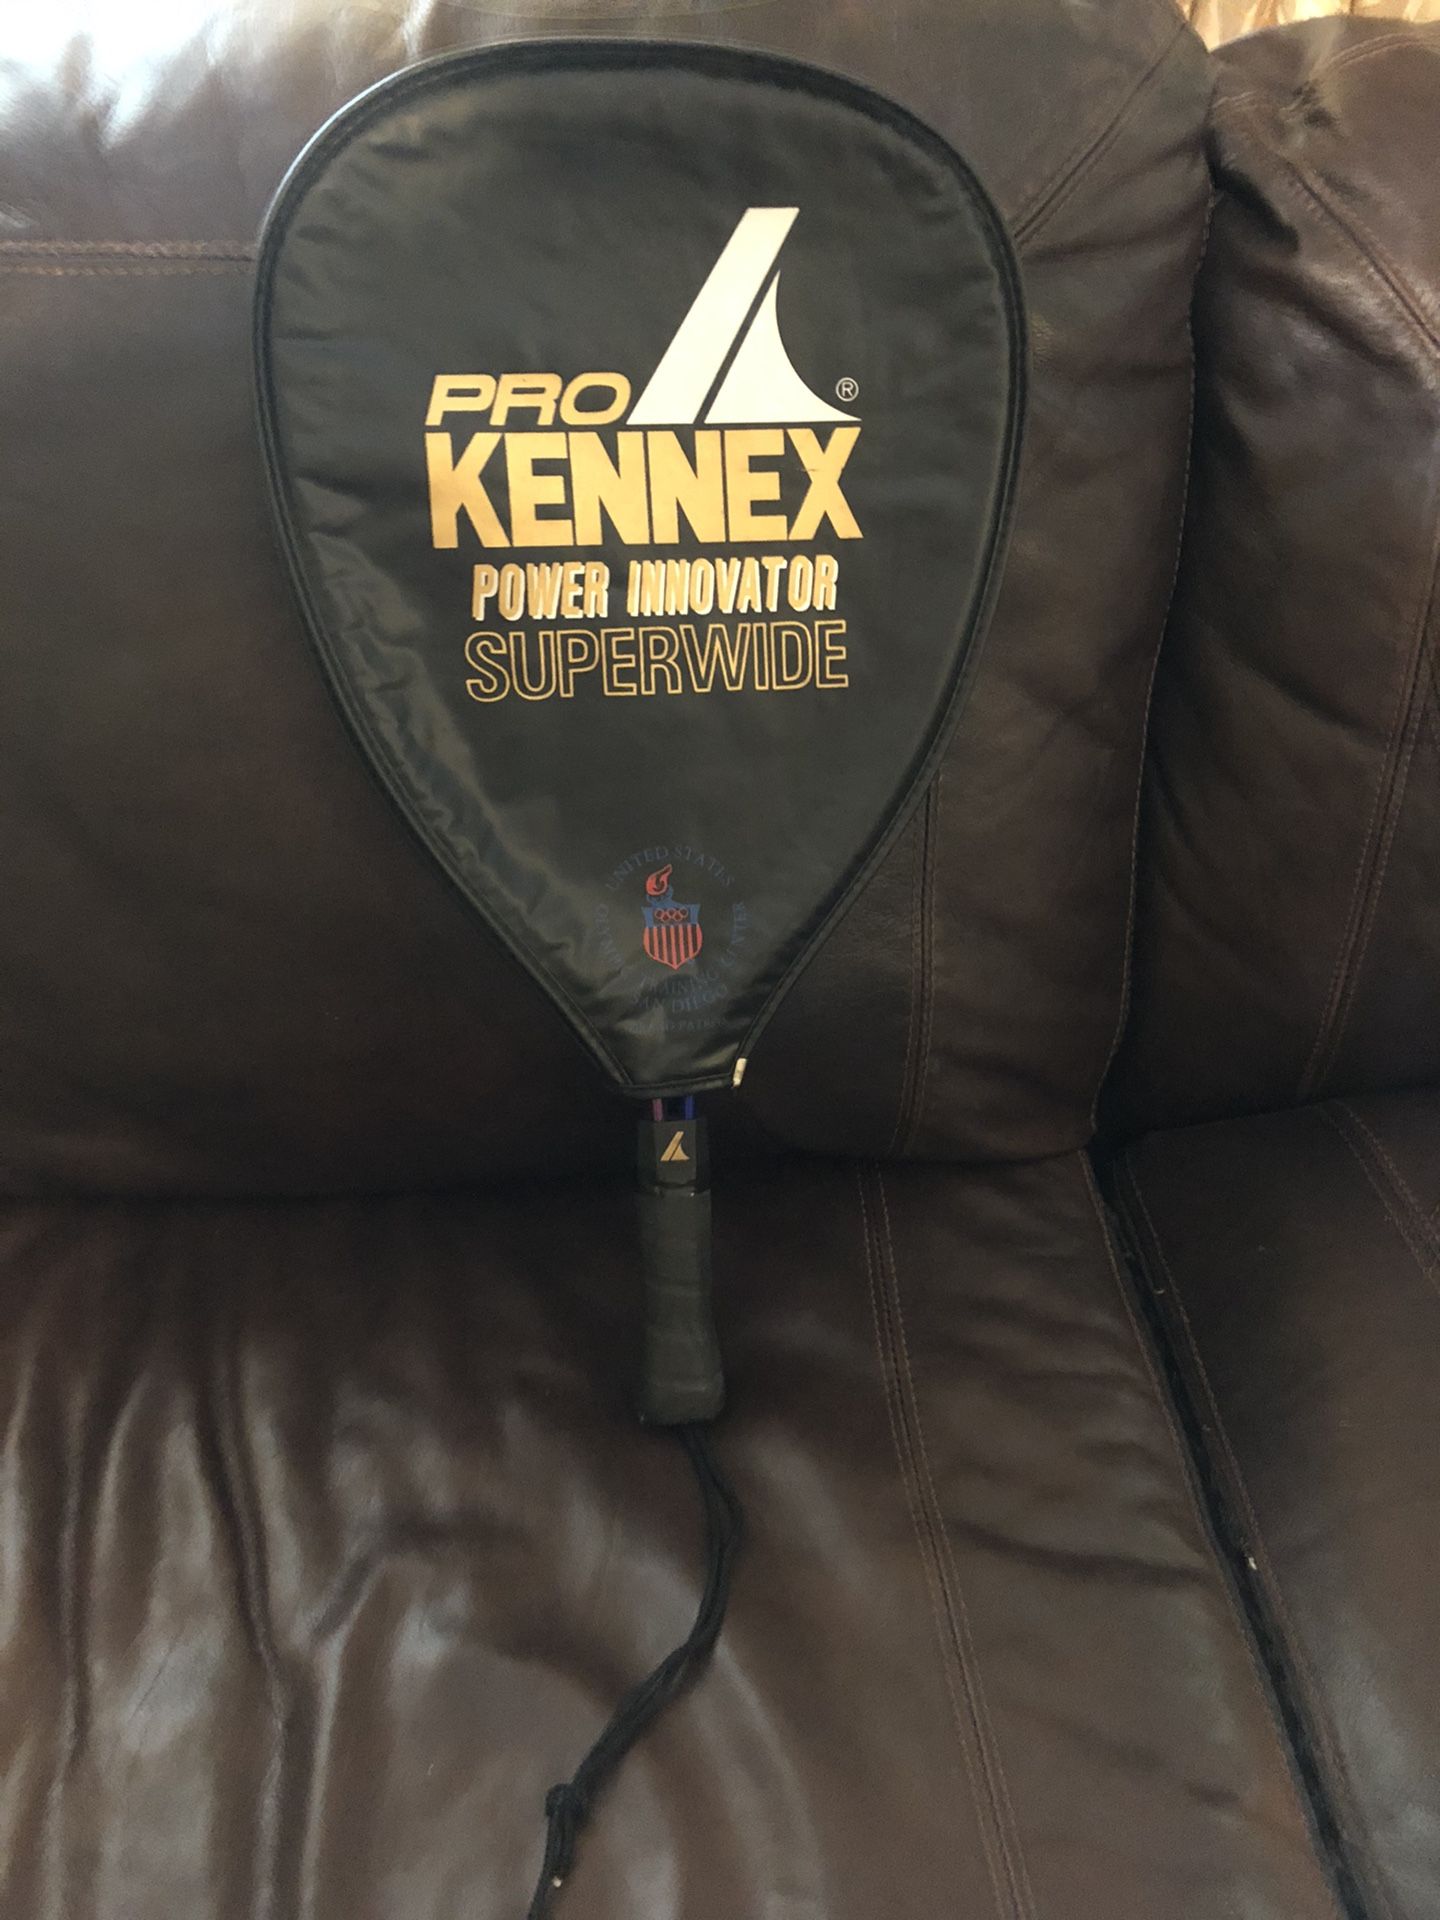 Pro Kennex Superwide Tennis Racket